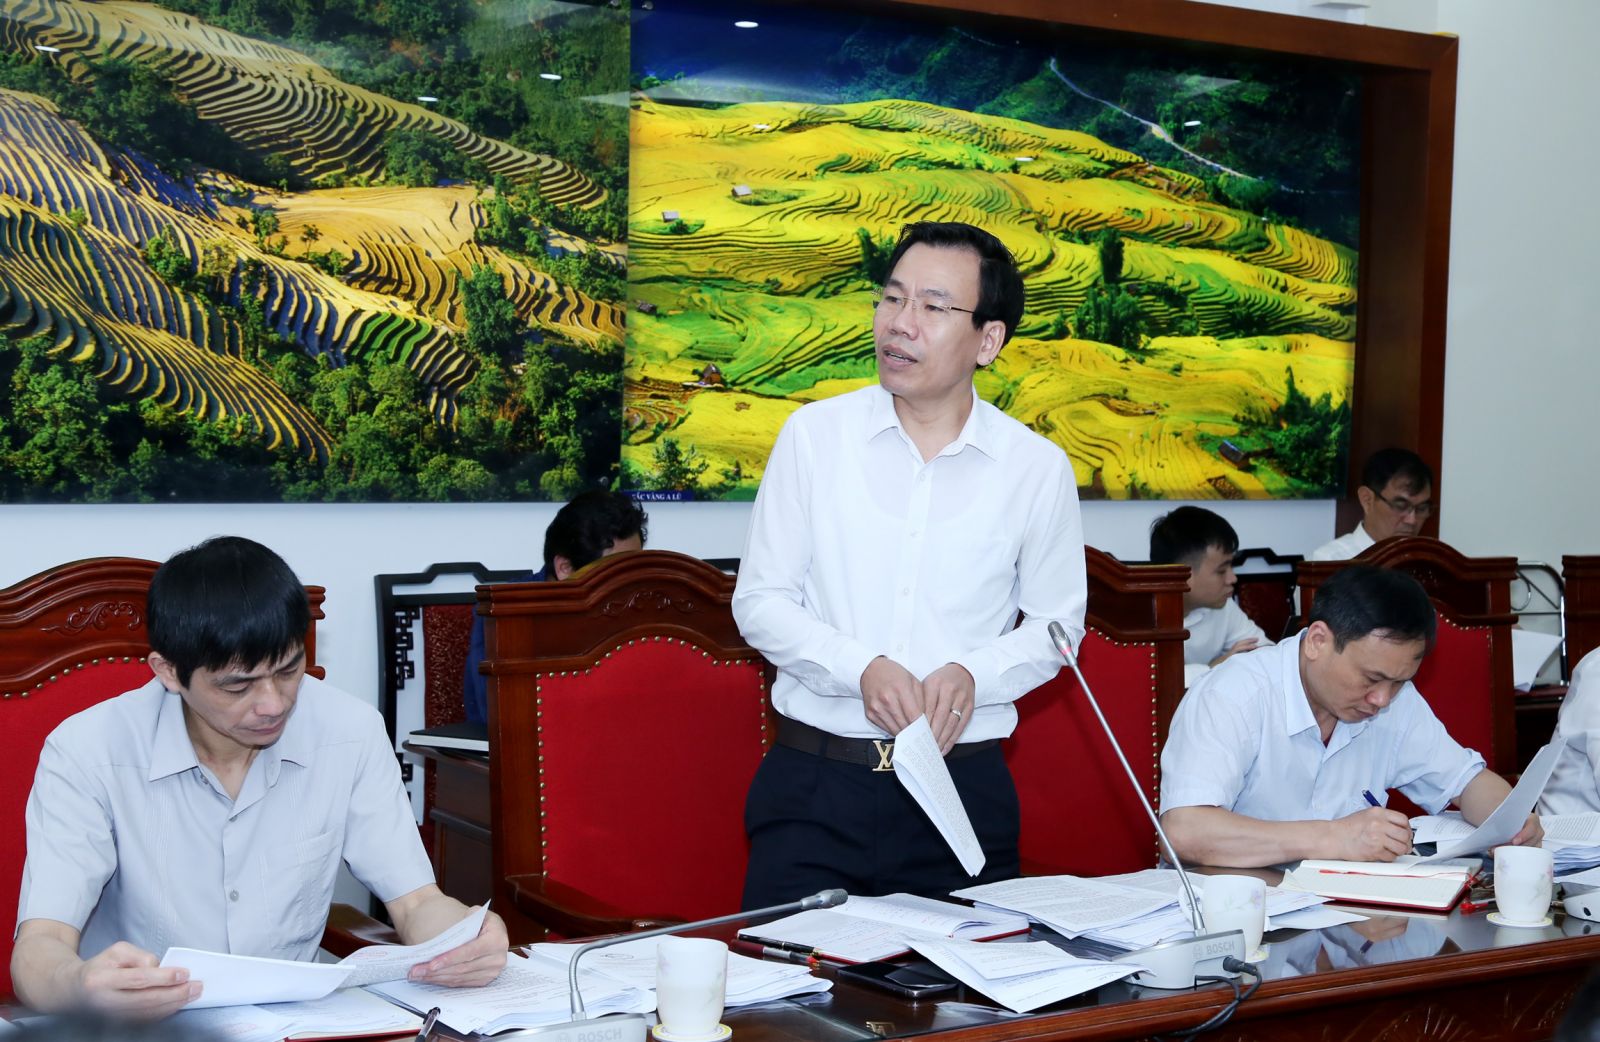 Đồng chí Dương Đức Huy - Trưởng ban Tuyên giáo Tỉnh ủy  tham gia ý kiến vào các báo cáo, nội dung hội nghị.